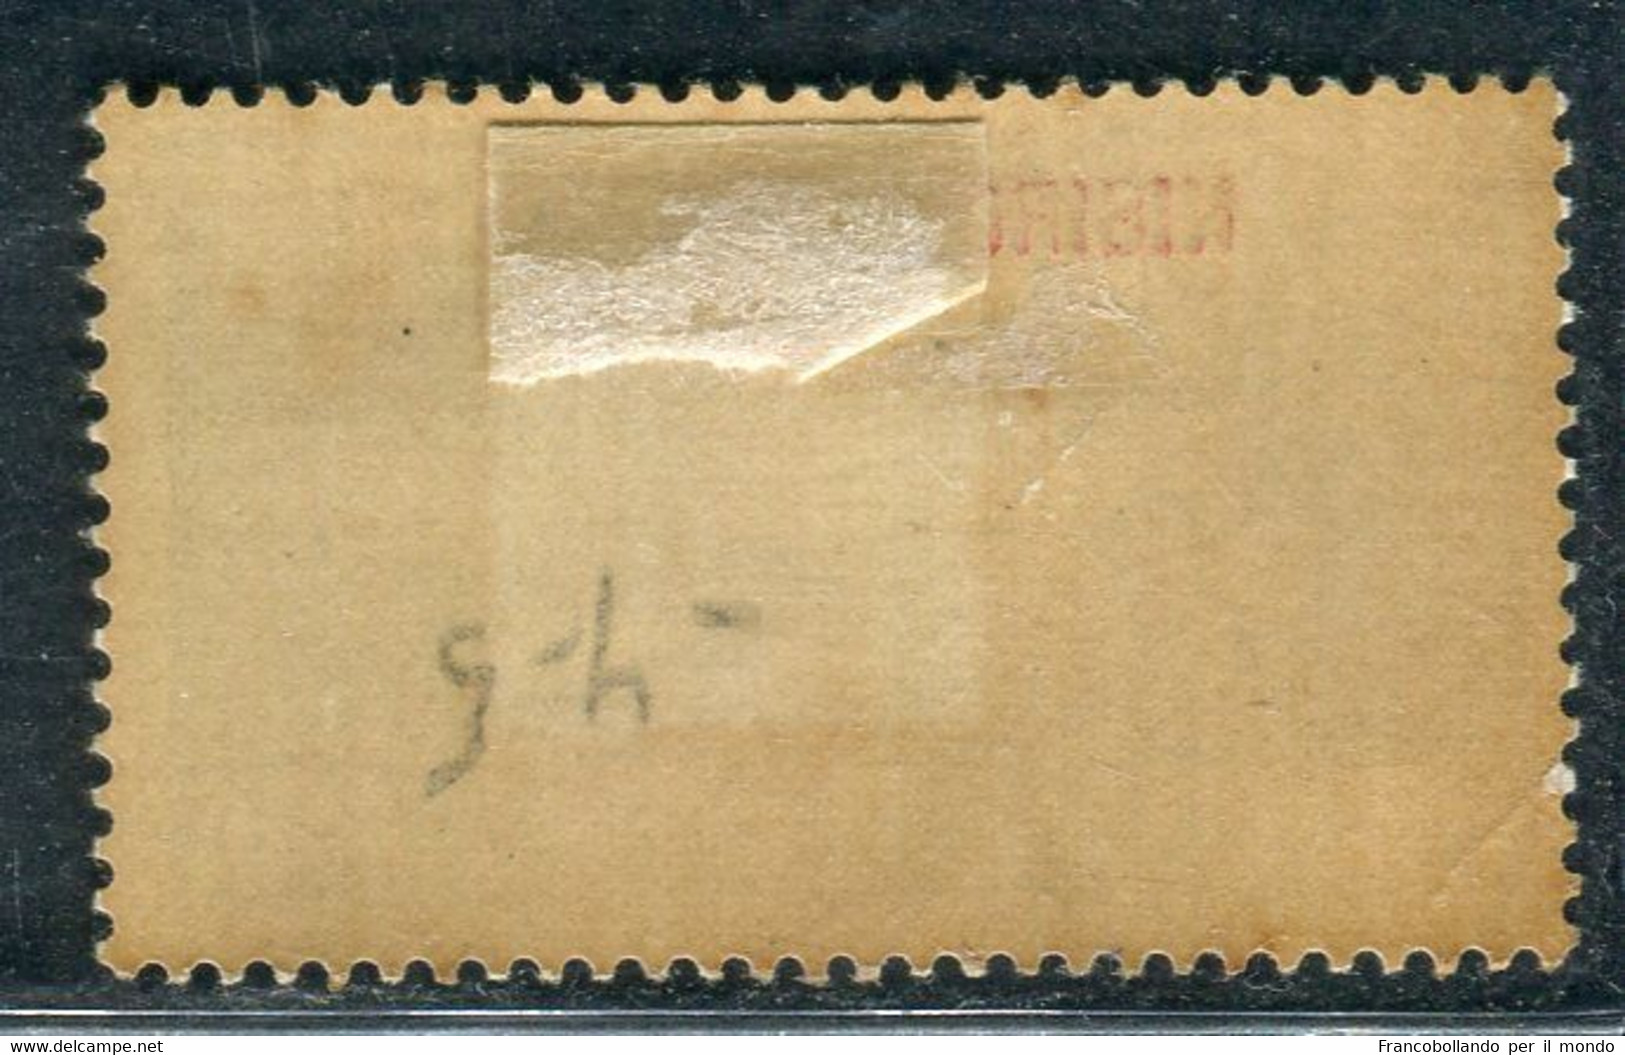 1930 Egeo Isole Nisiro 20 Cent Serie Ferrucci MH Sassone 12 - Aegean (Lipso)